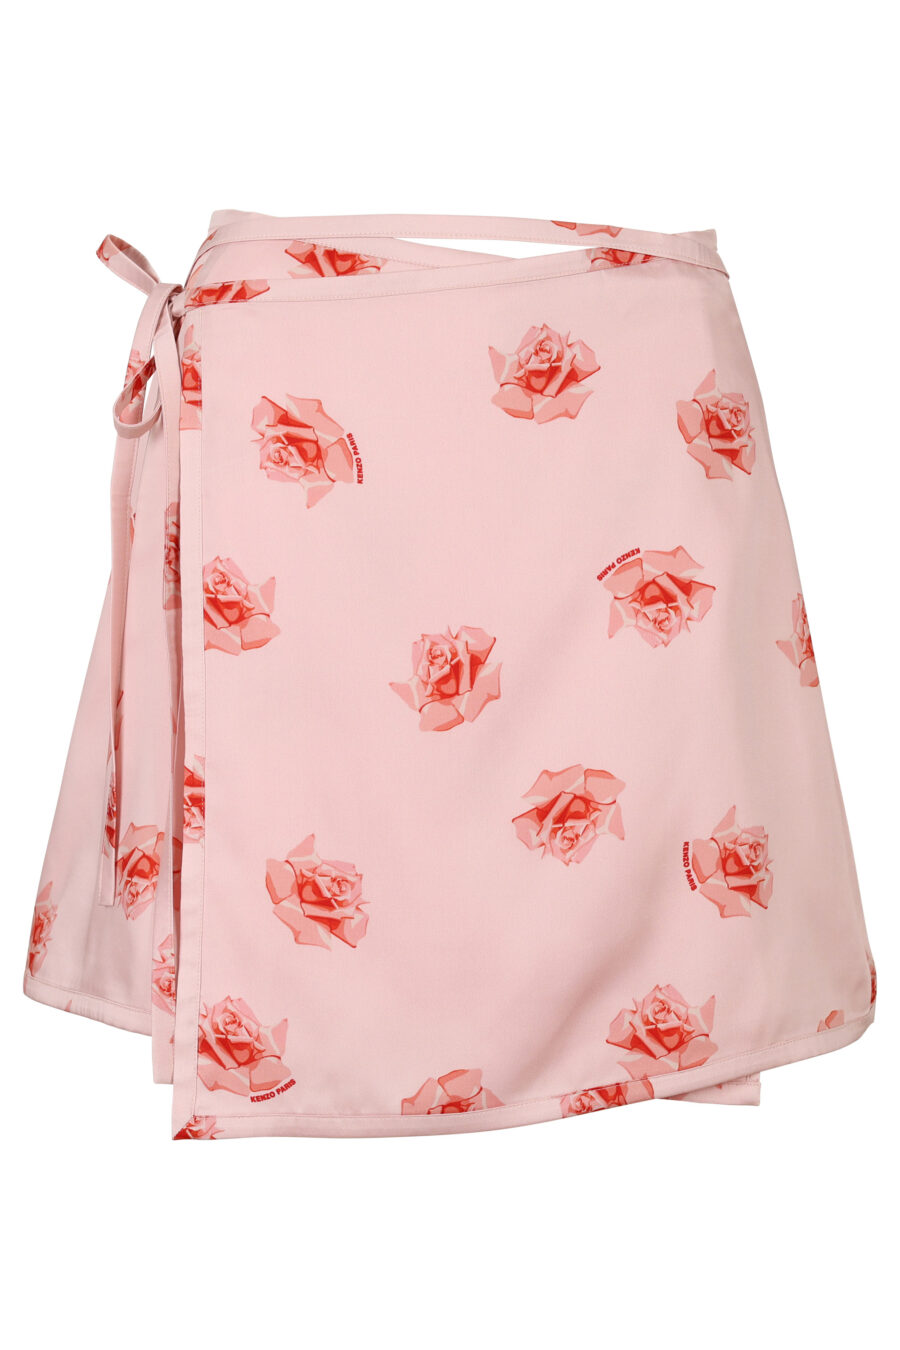 Falda rosa con estampado "kenzo rose" - 3612230616165